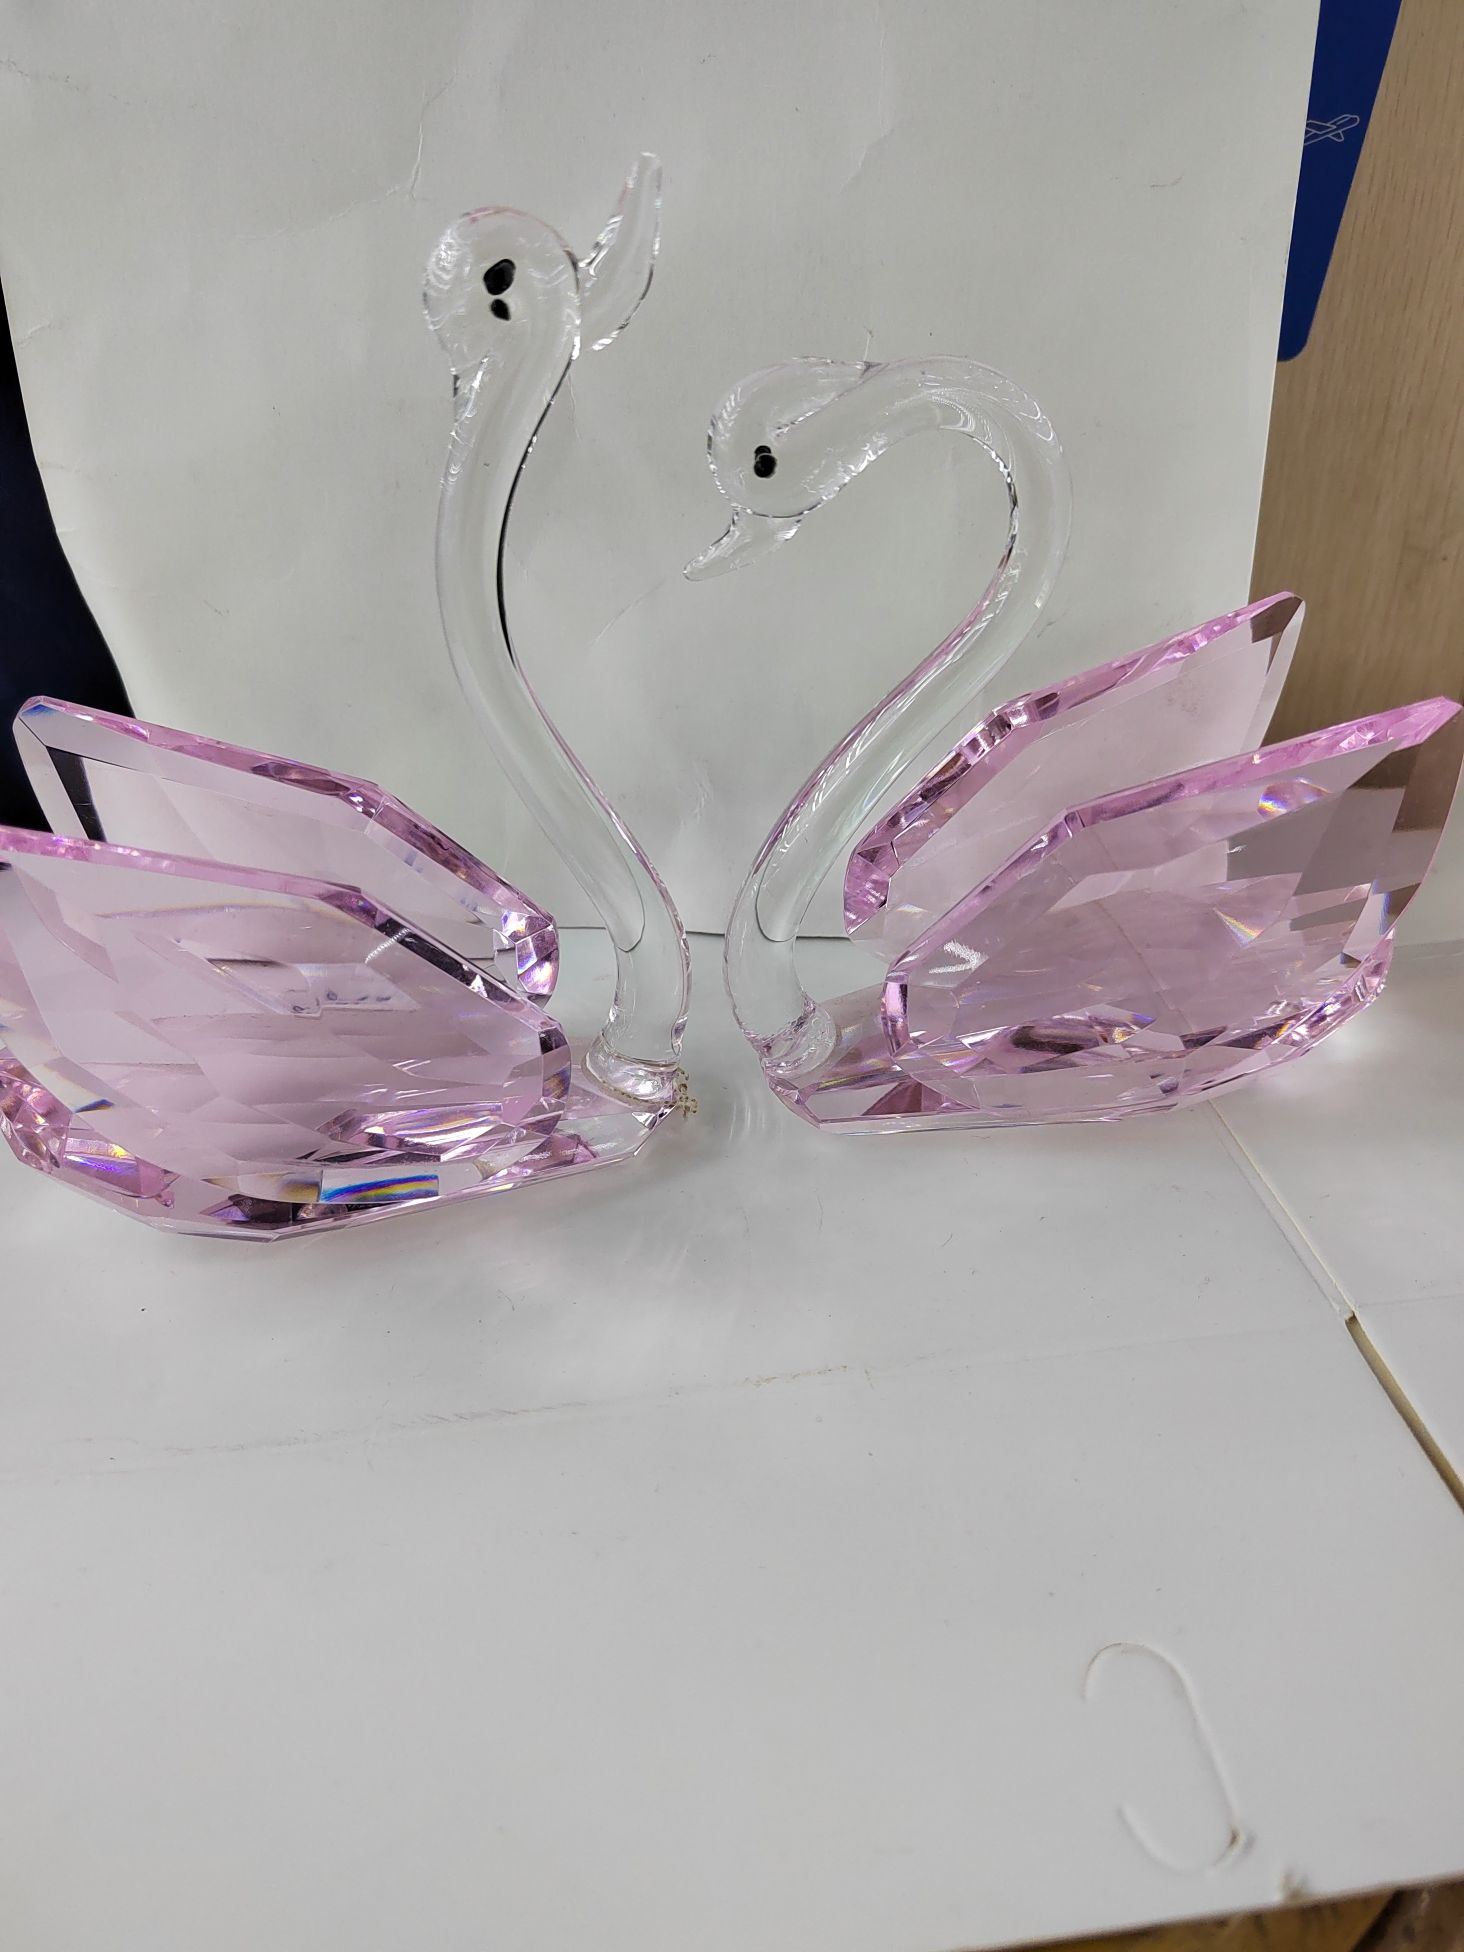 思文工艺水晶玻璃120mm粉色天鹅摆件7887—025详情图1